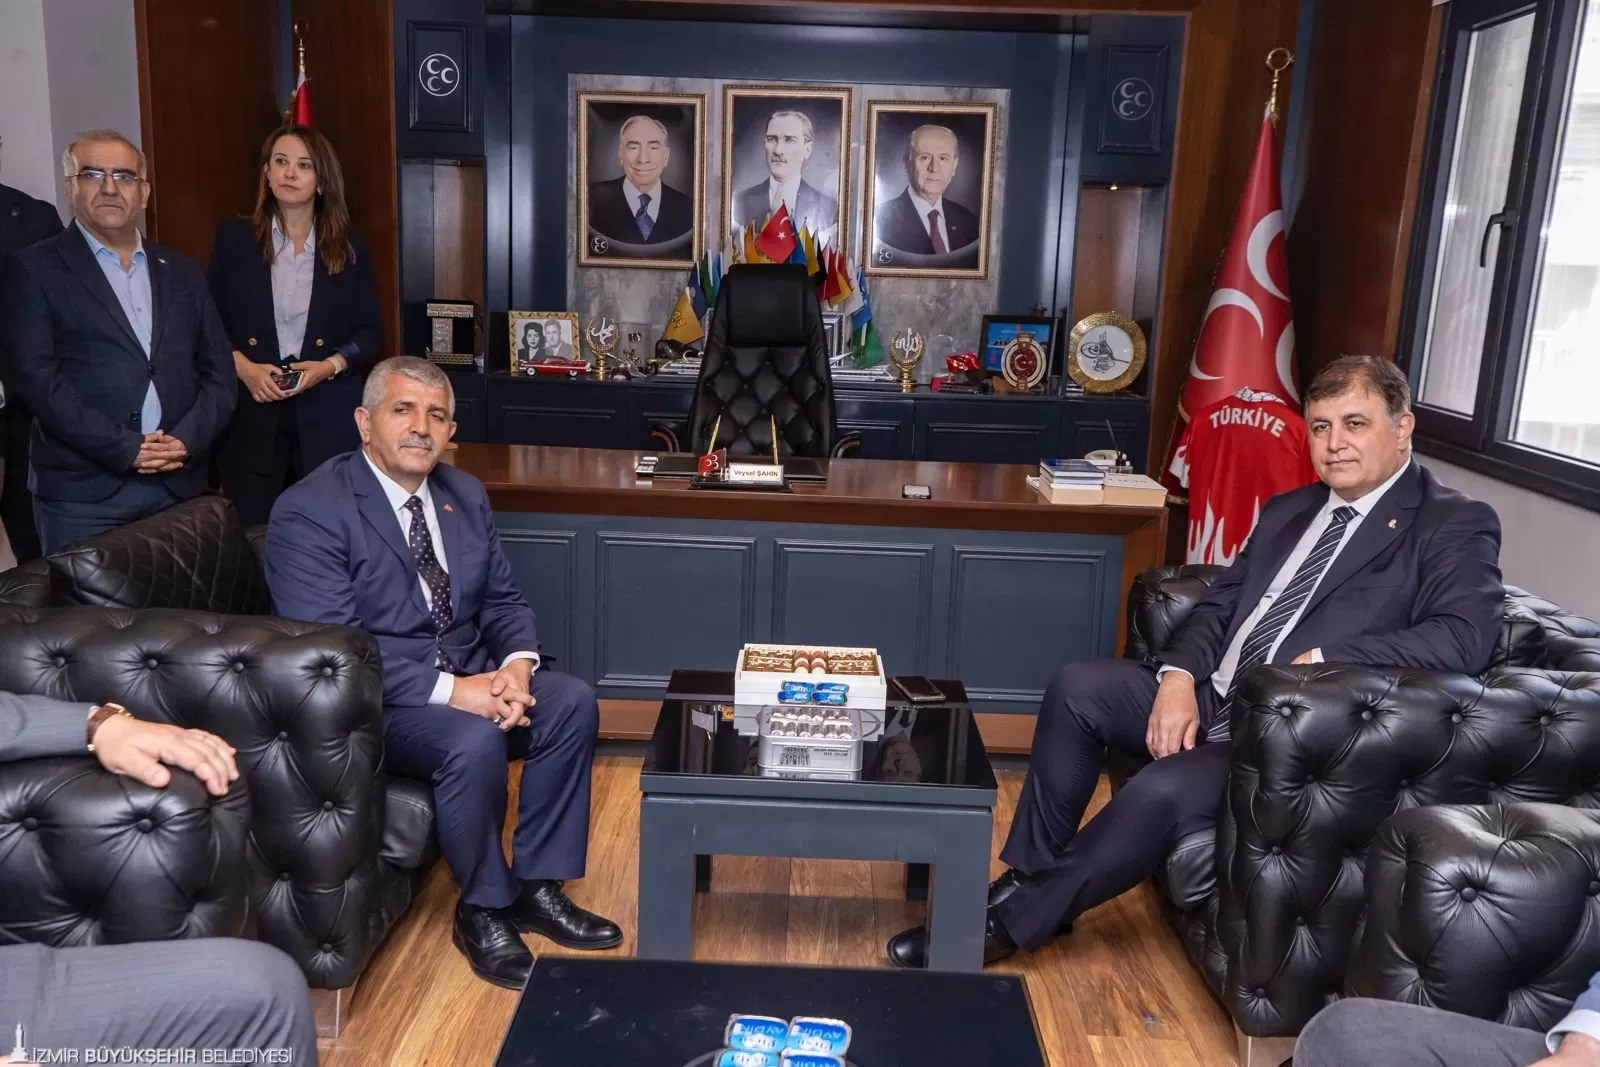 İzmir Büyükşehir Belediye Başkanı Dr. Cemil Tugay, siyasi parti ziyaretleri kapsamında Milliyetçi Hareket Partisi (MHP) İzmir İl Başkanlığı'nı ziyaret etti.